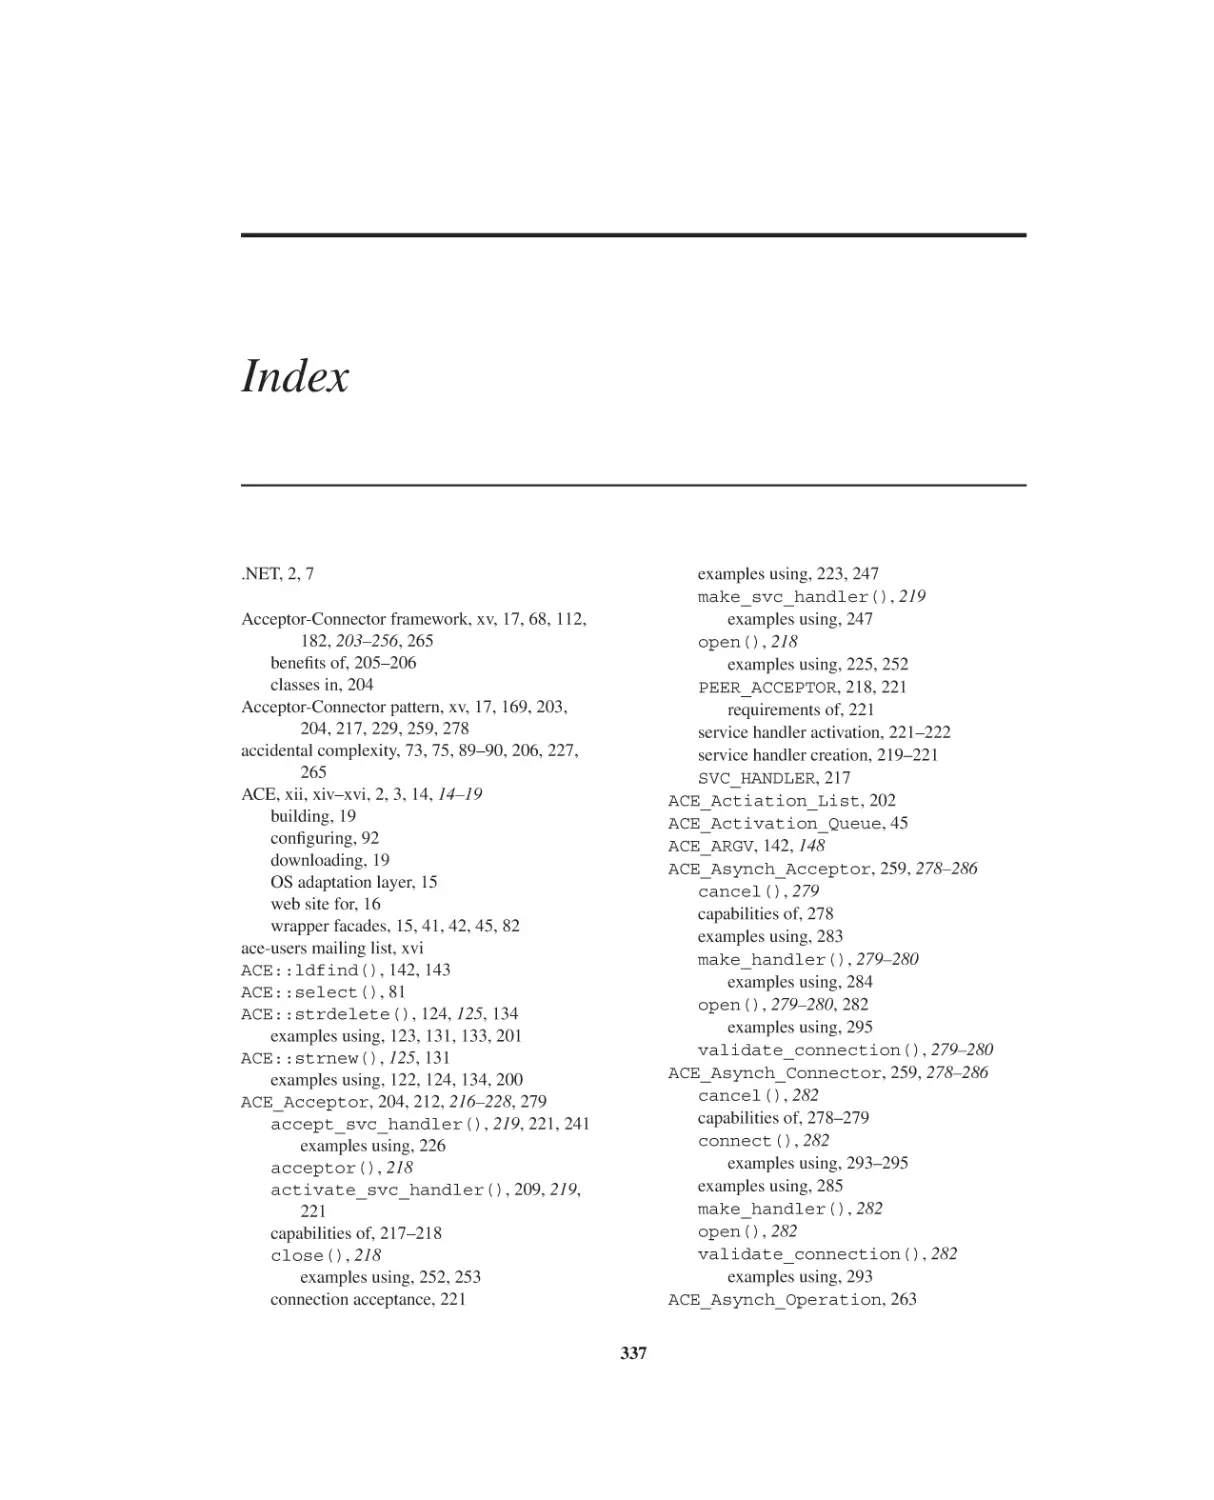 Index
A